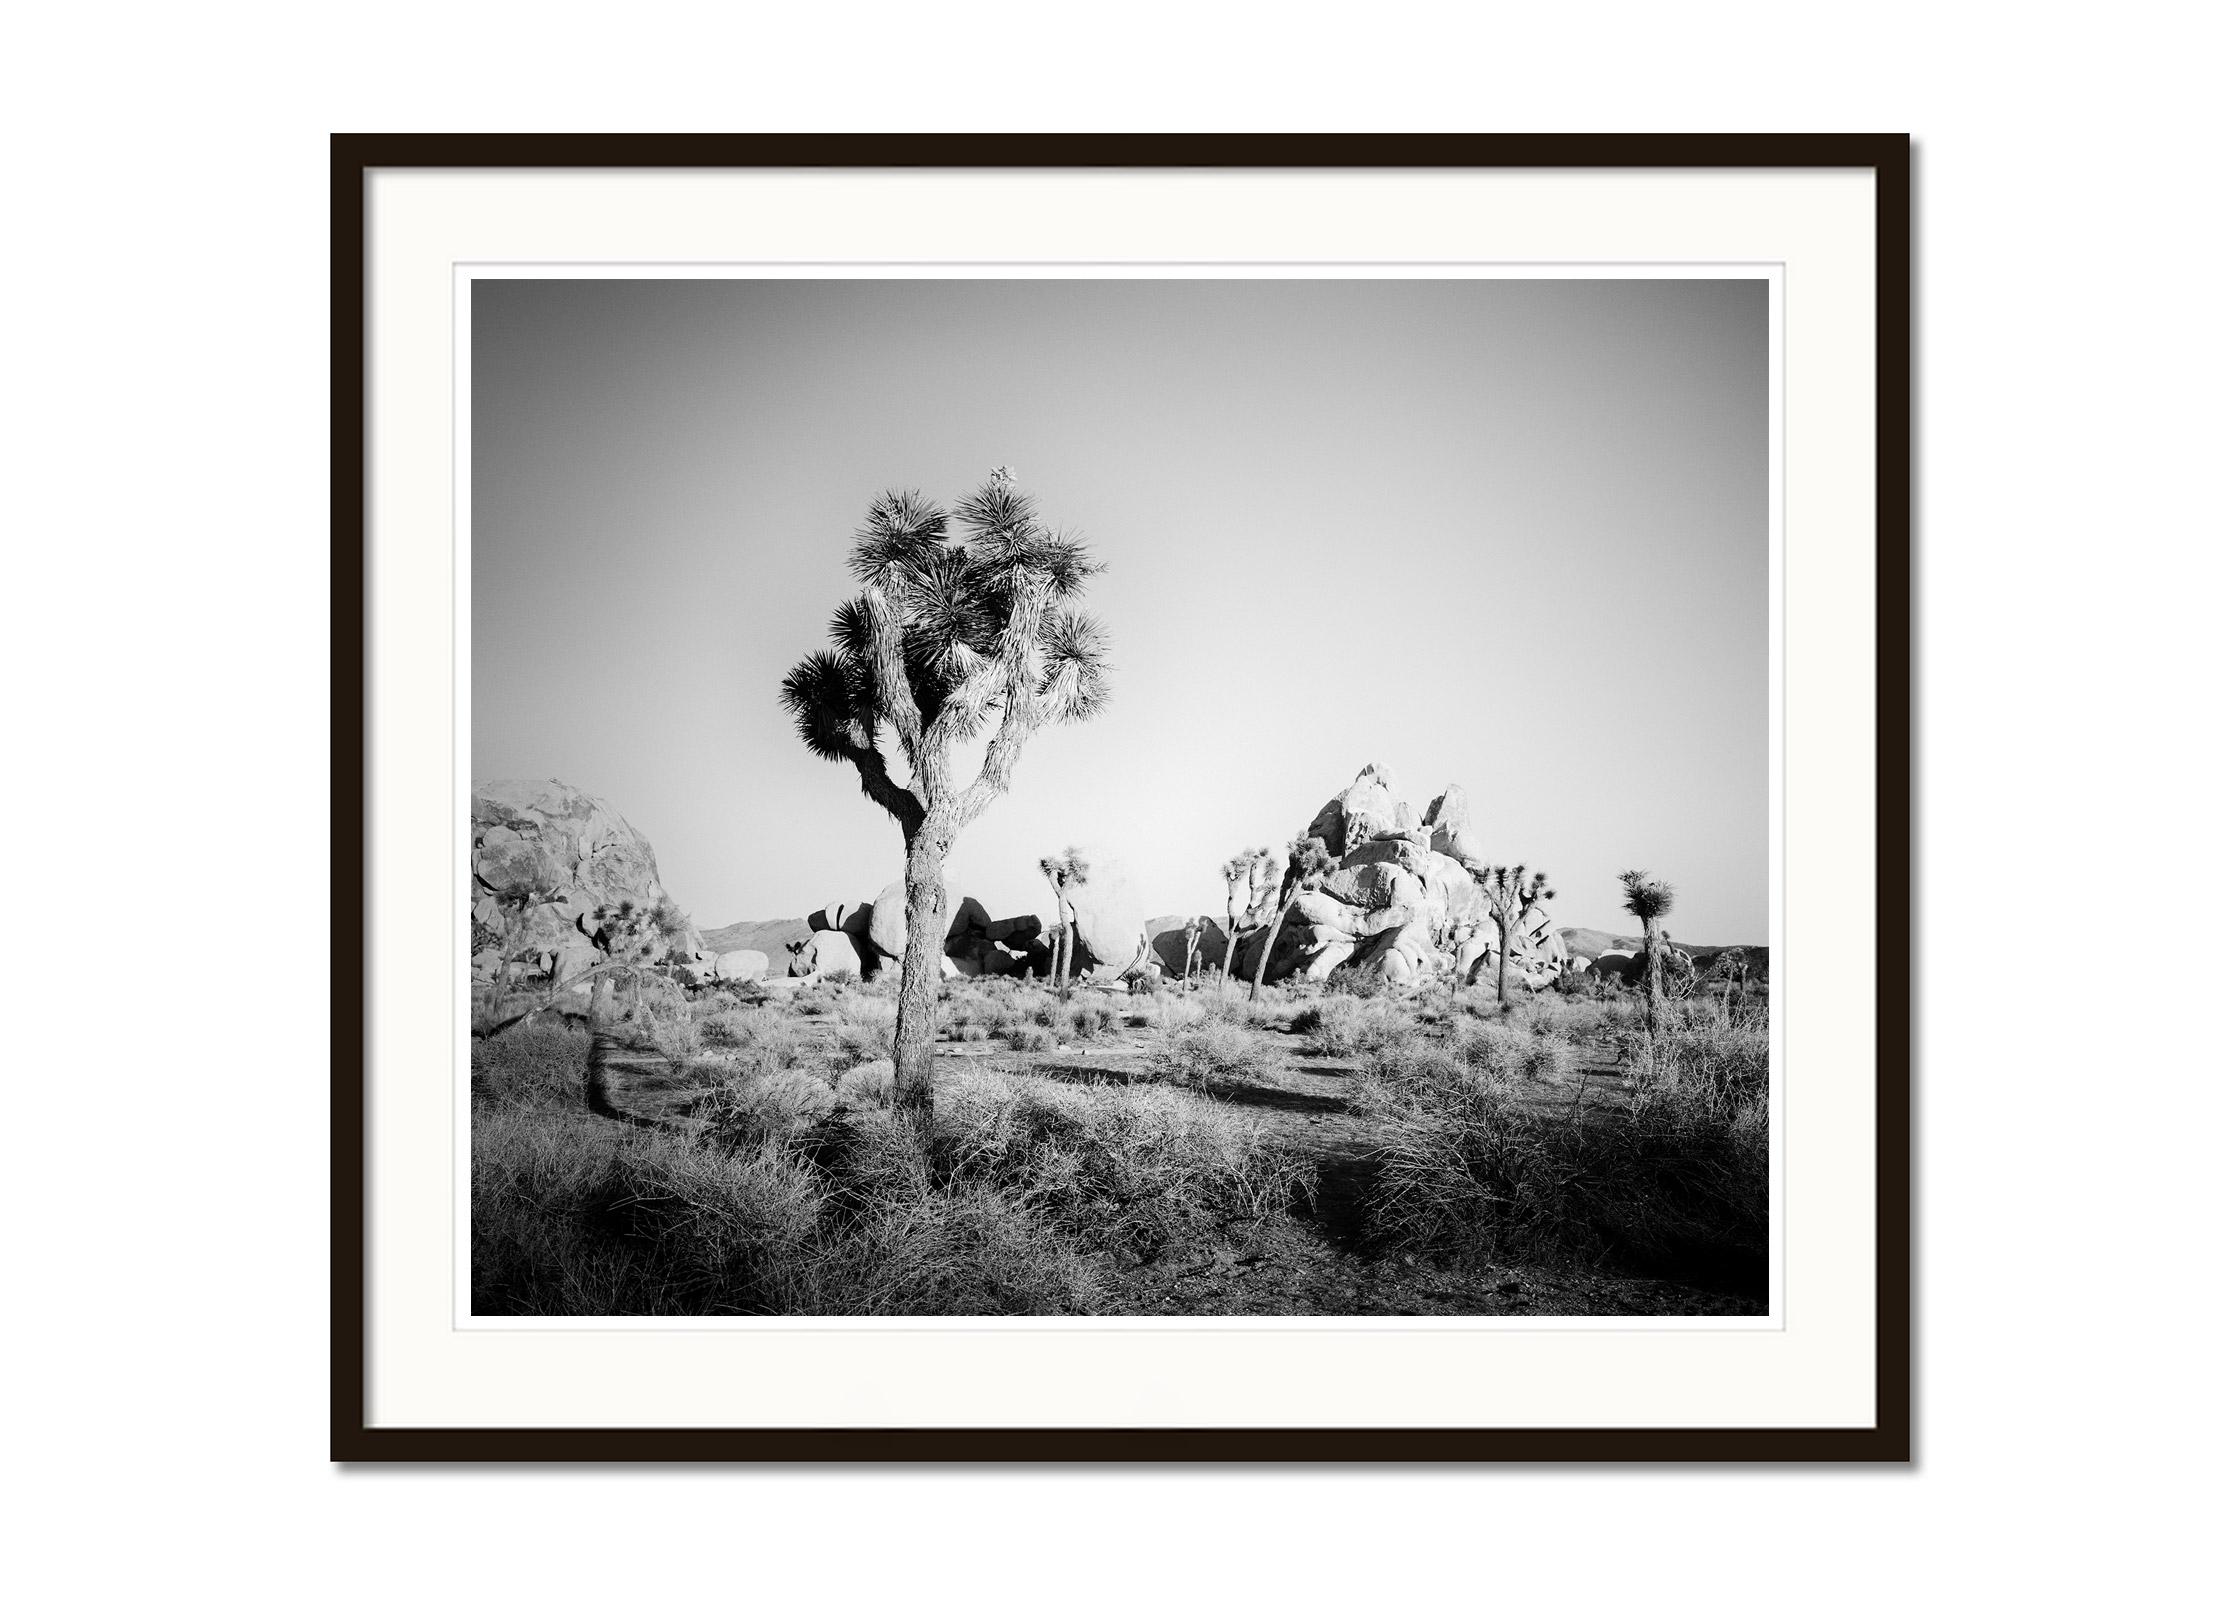 Joshua Tree, Felsen, Wüste, Kalifornien, USA, Schwarz-Weiß-Landschaftsfotografie (Grau), Landscape Photograph, von Gerald Berghammer